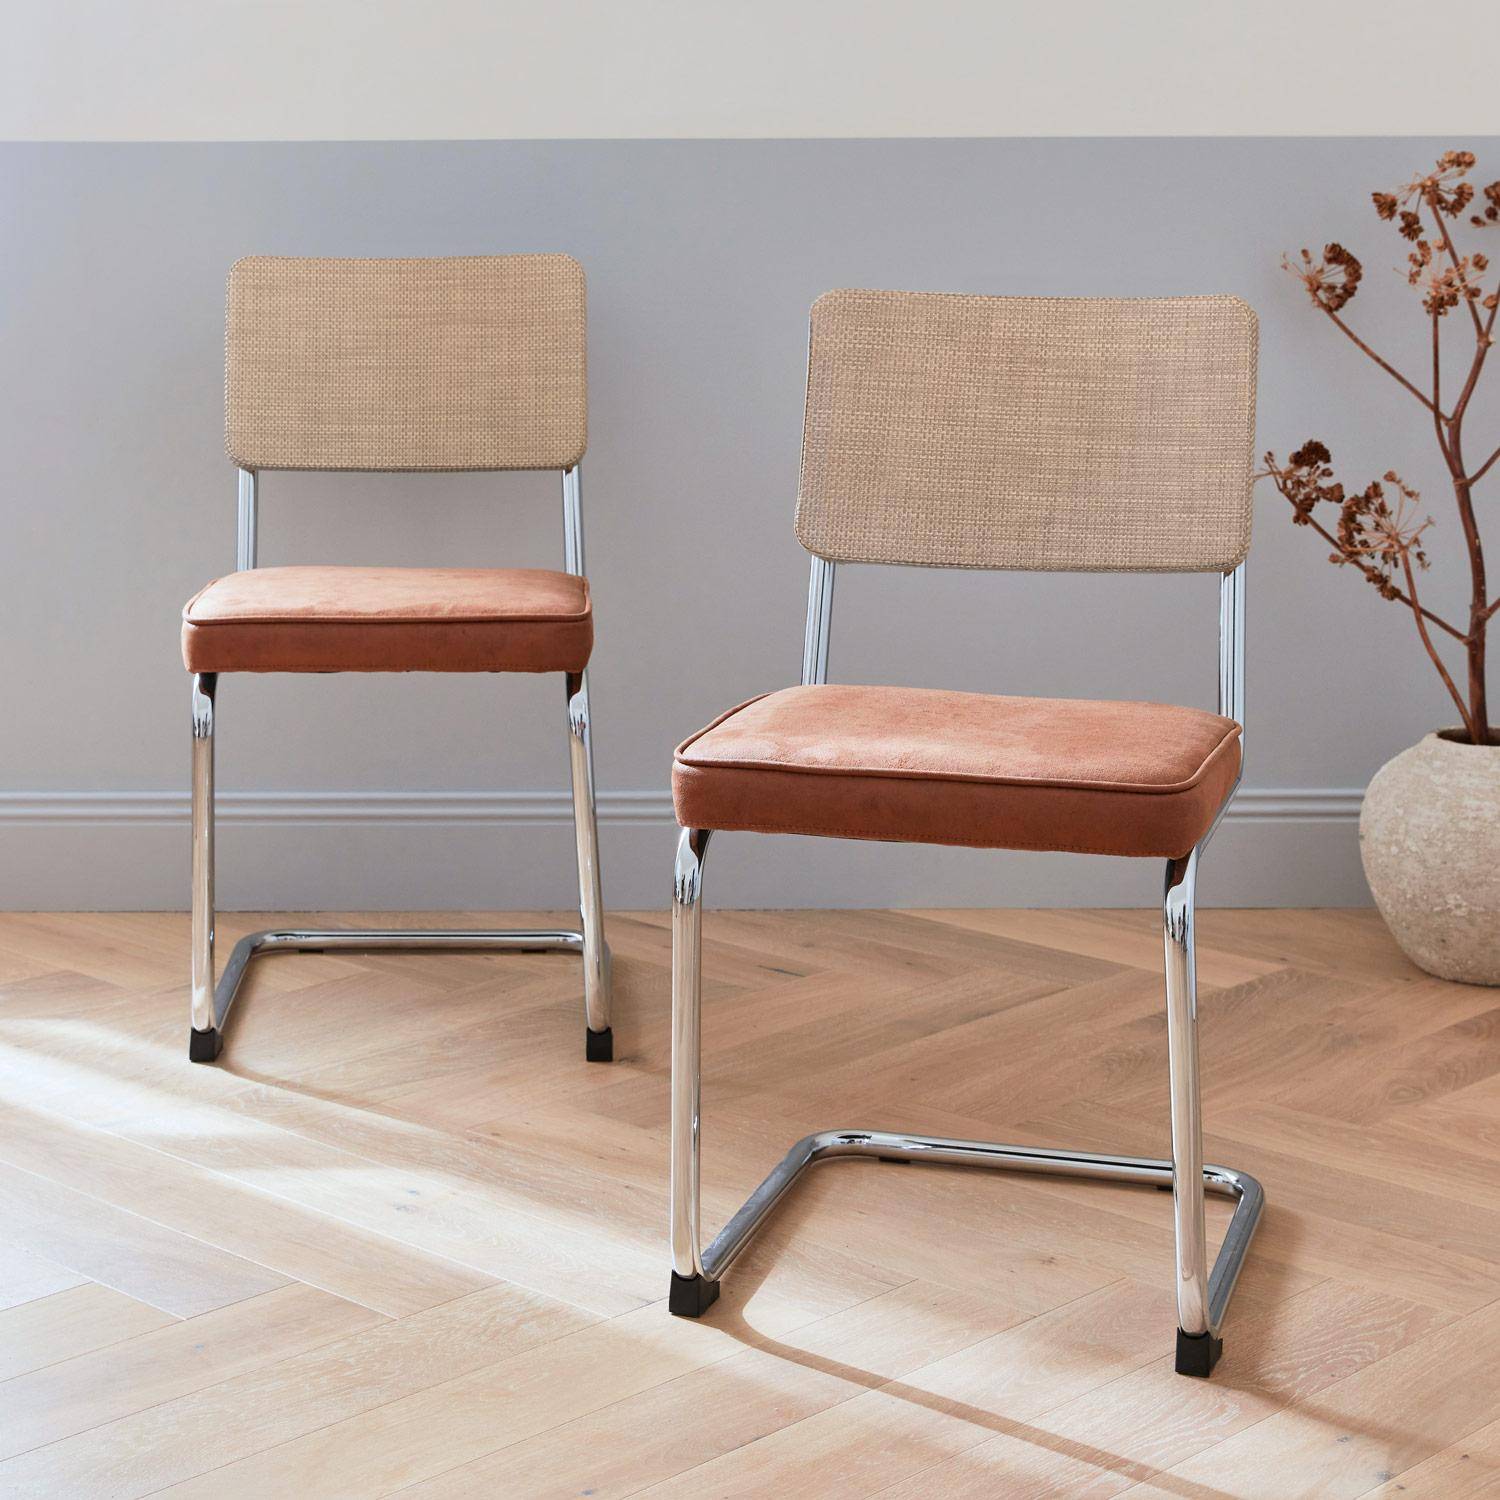 2 cadeiras cantilever - Maja - tecido castanho claro e resina com efeito rattan, 46 x 54,5 x 84,5 cm Photo2